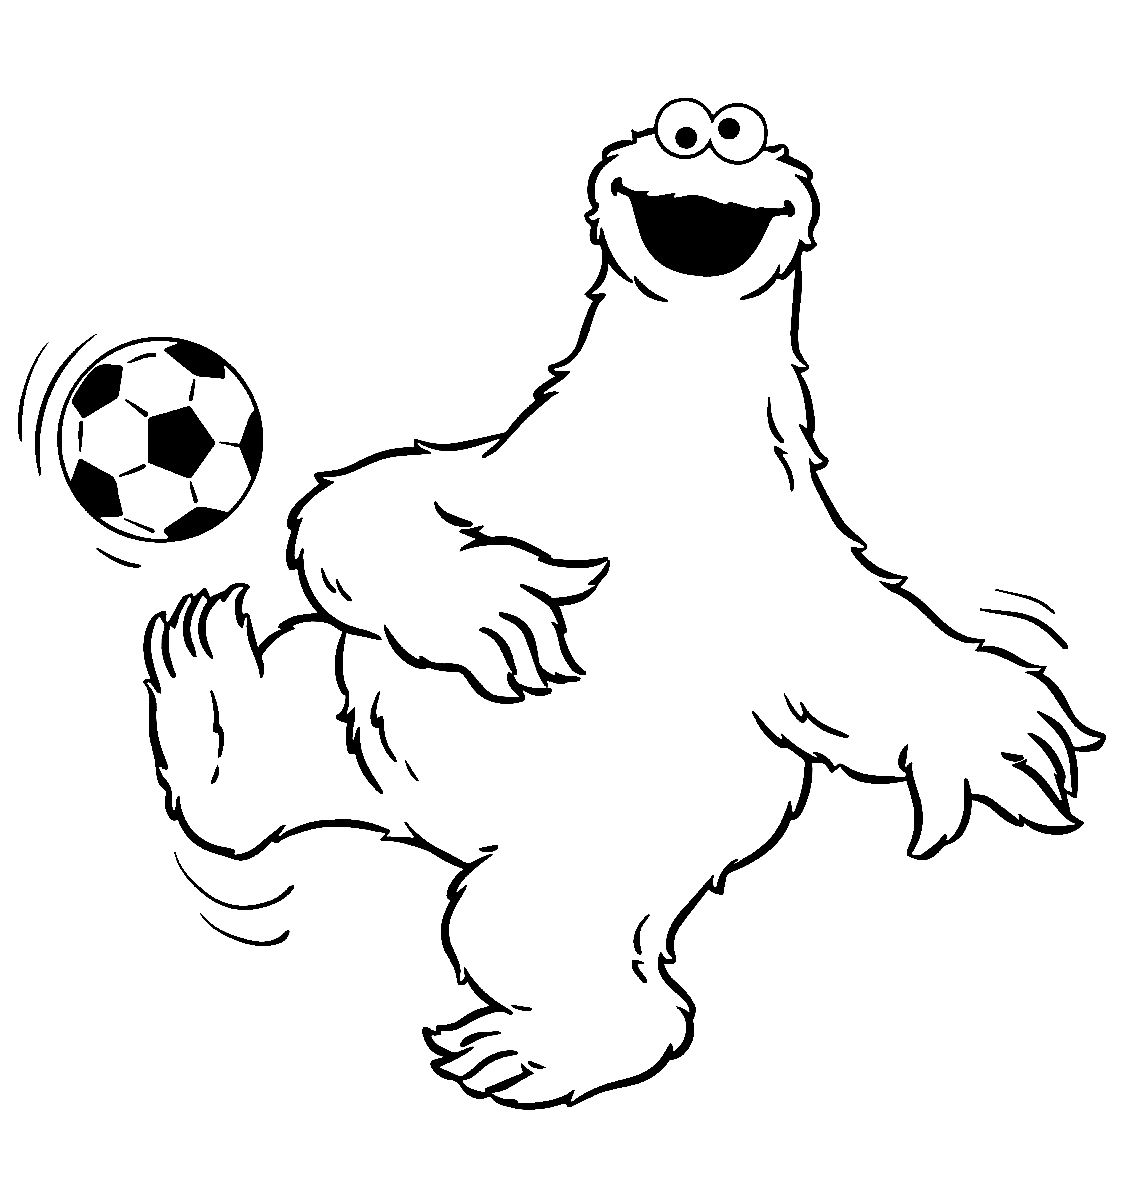 Cookie Monster joga futebol de futebol